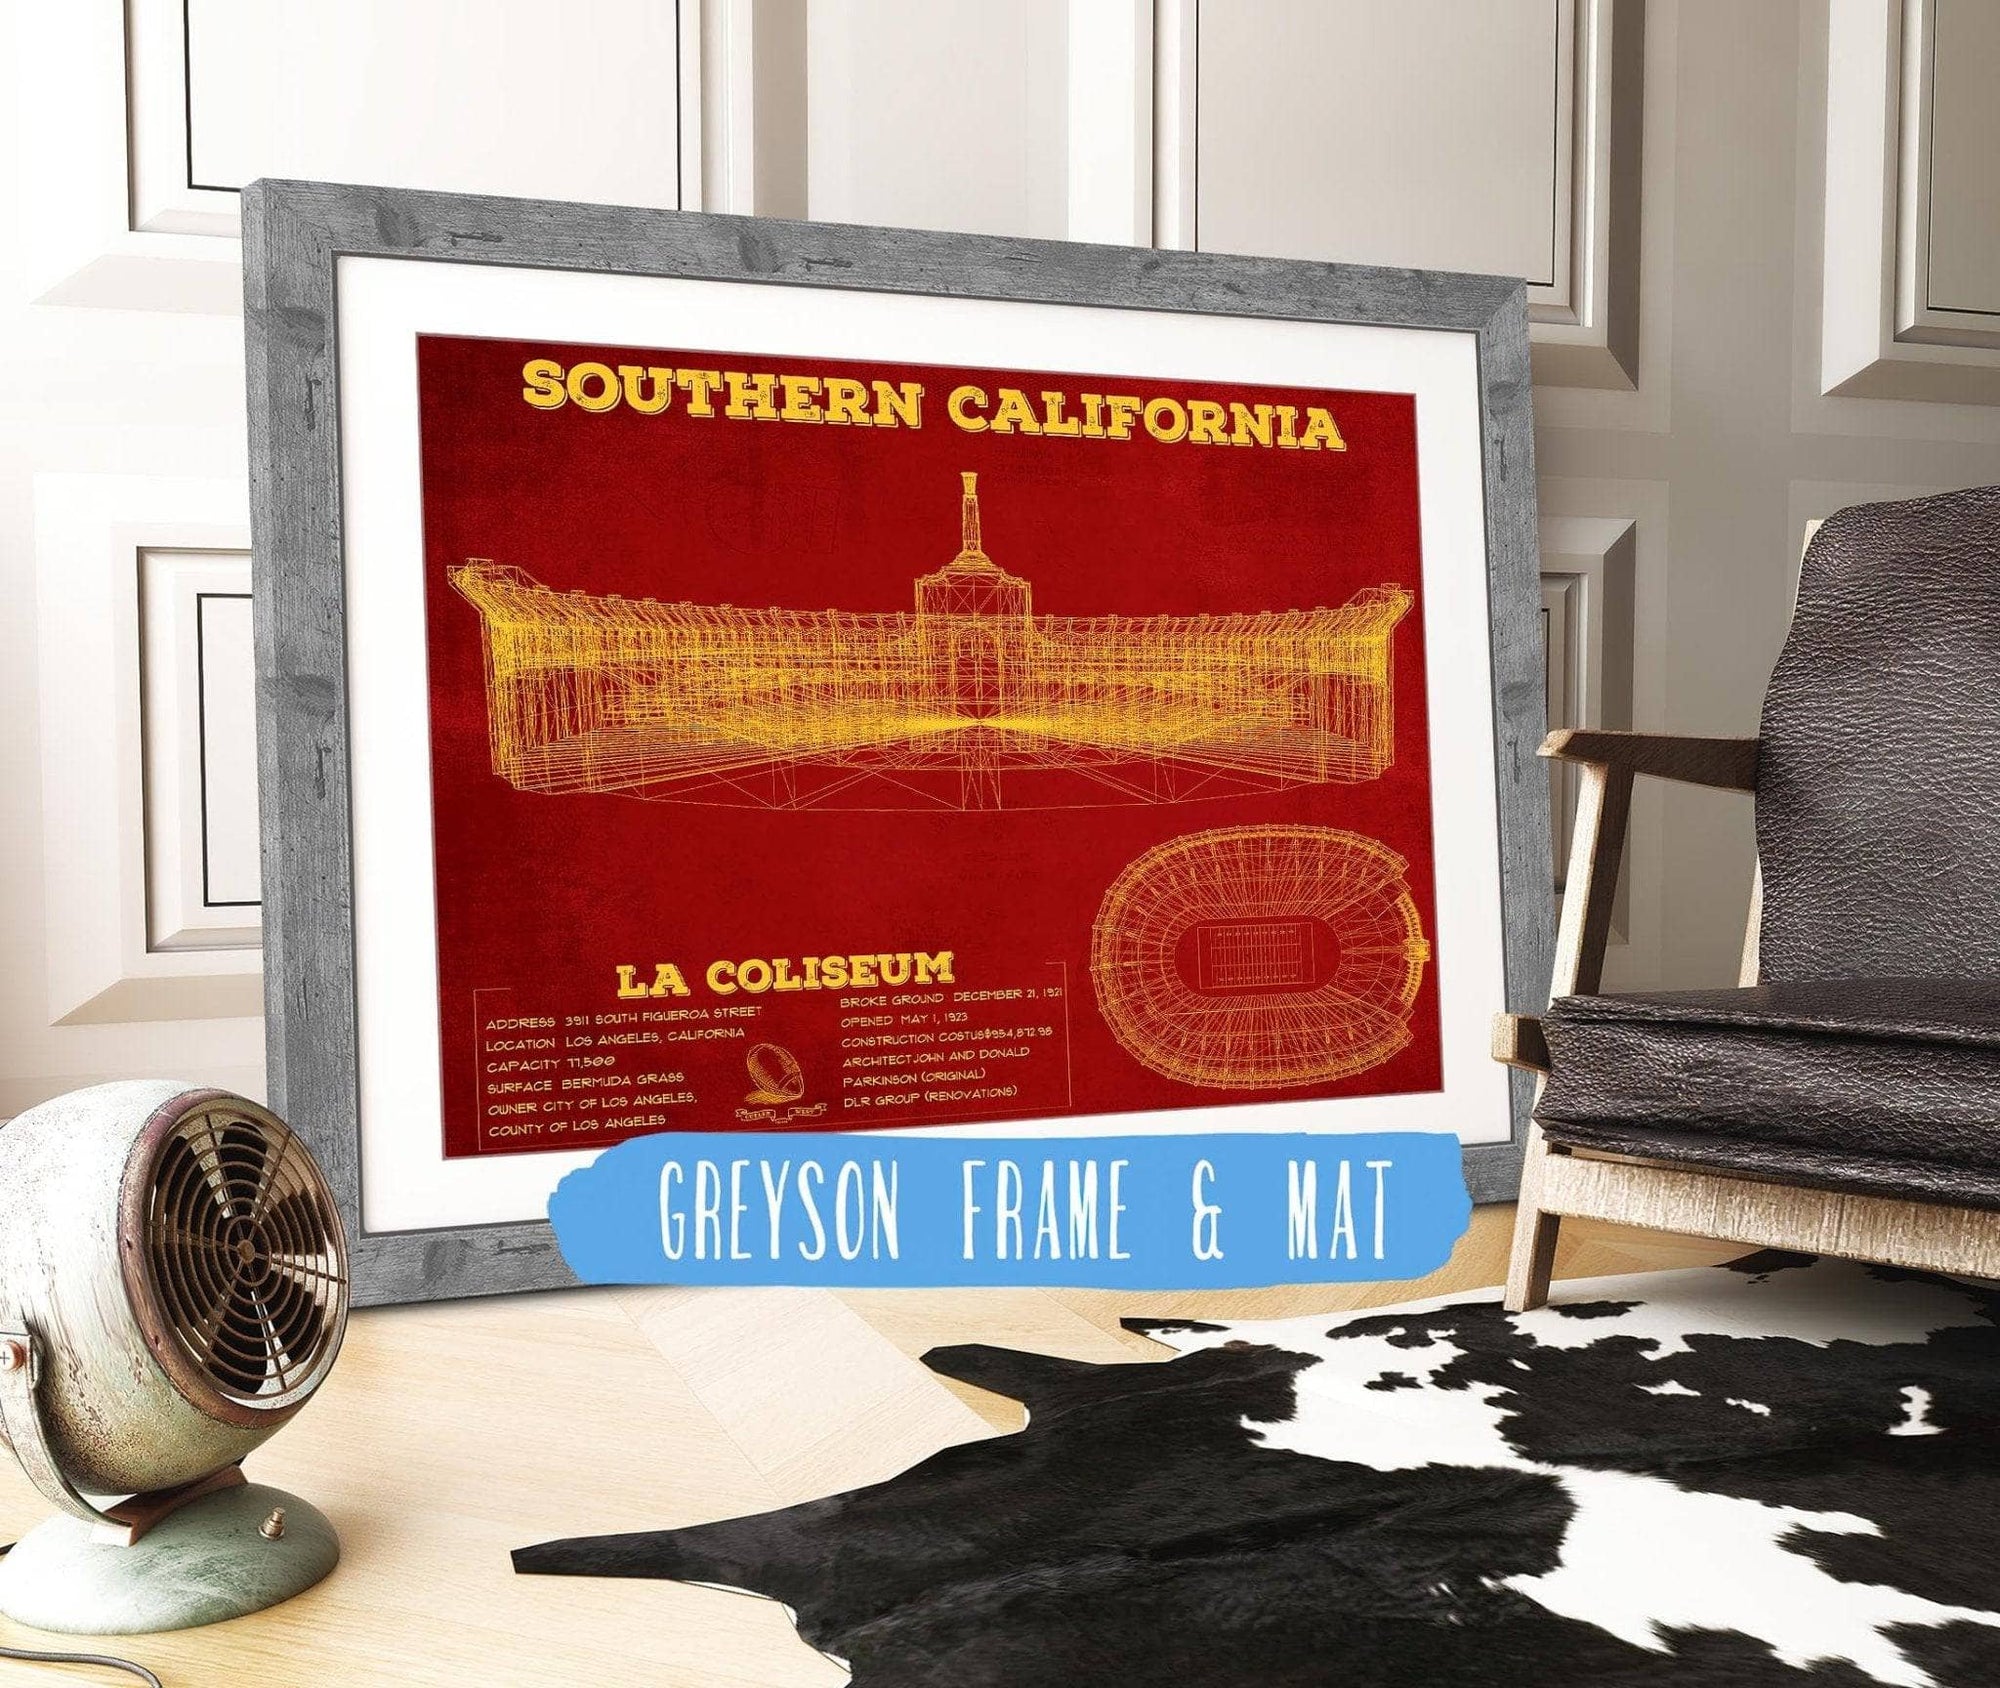 Cutler West College Football Collection 14" x 11" / Greyson Frame & Mat Vintage USC Trojans - LA Coliseum Blueprint Art Print 737528166-14"-x-11"66098